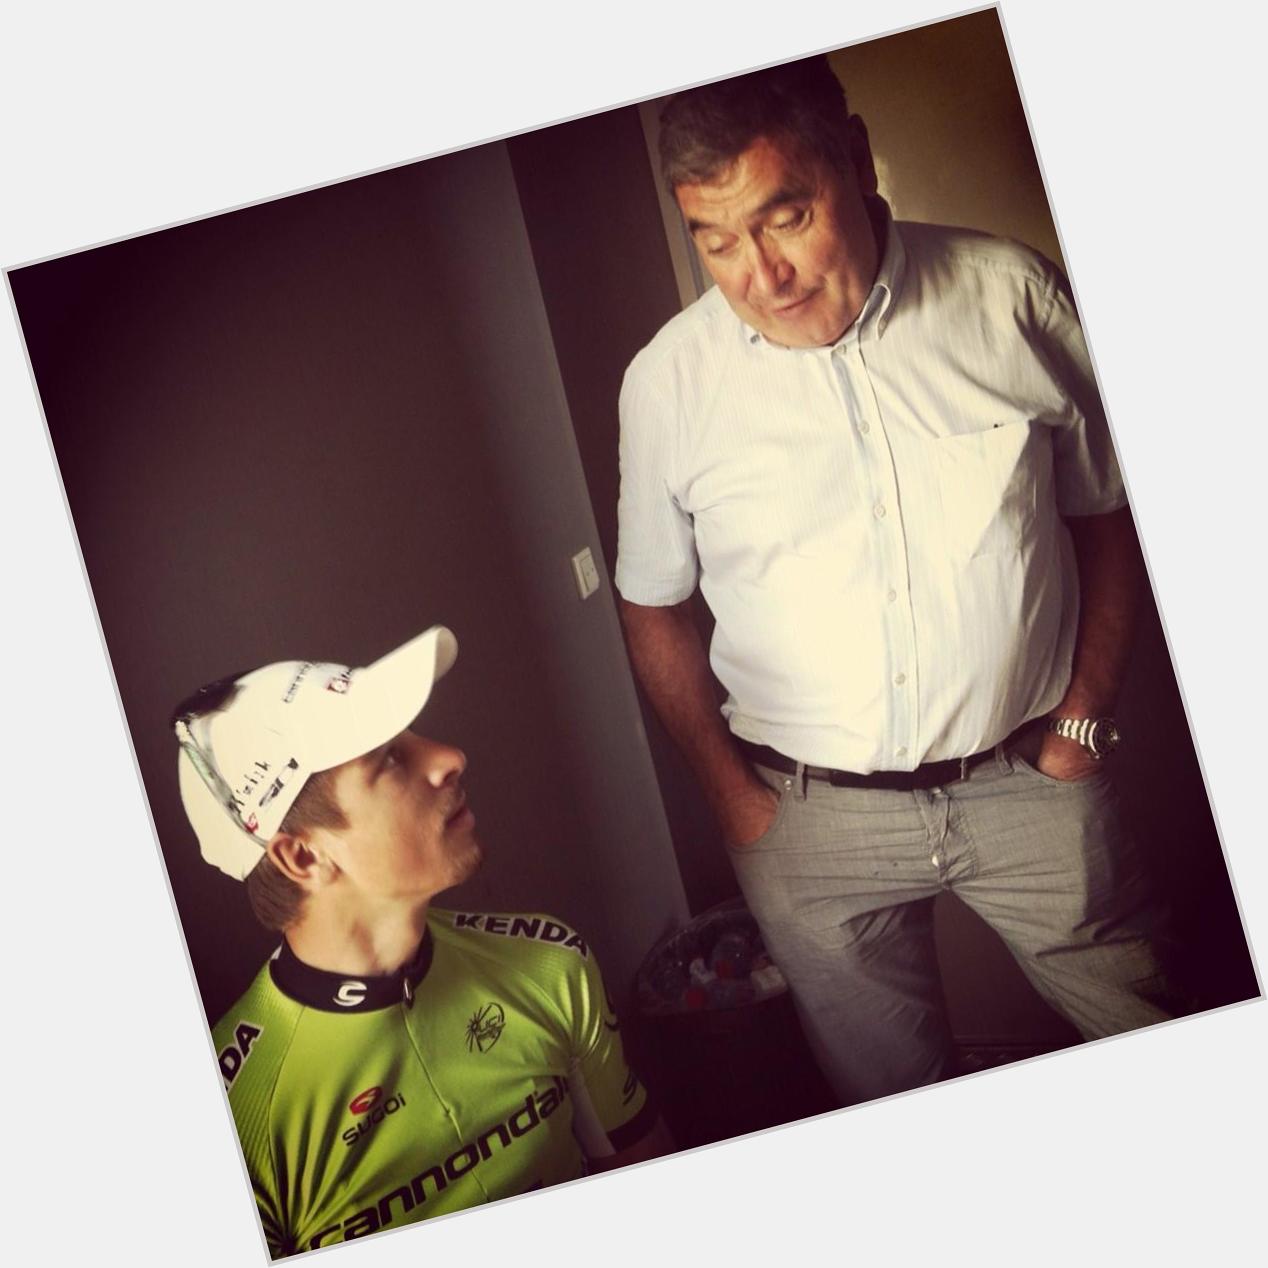 Back in 2013.... young Peter Sagan meets Eddy Merckx.
Happy birthday to   Eddy Merckx 